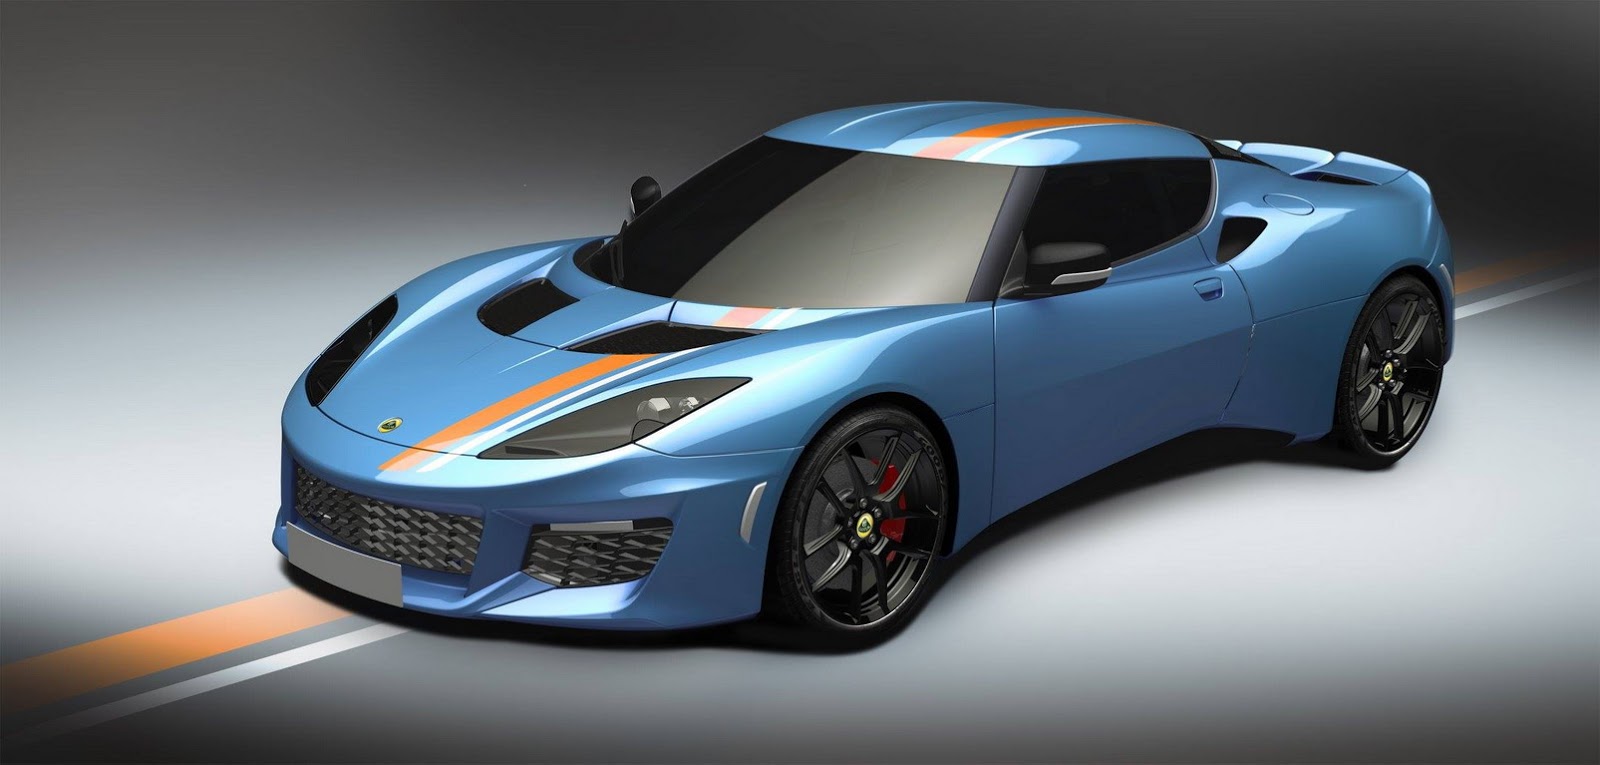 Lotus Evora 400 Blue & Orange Edition